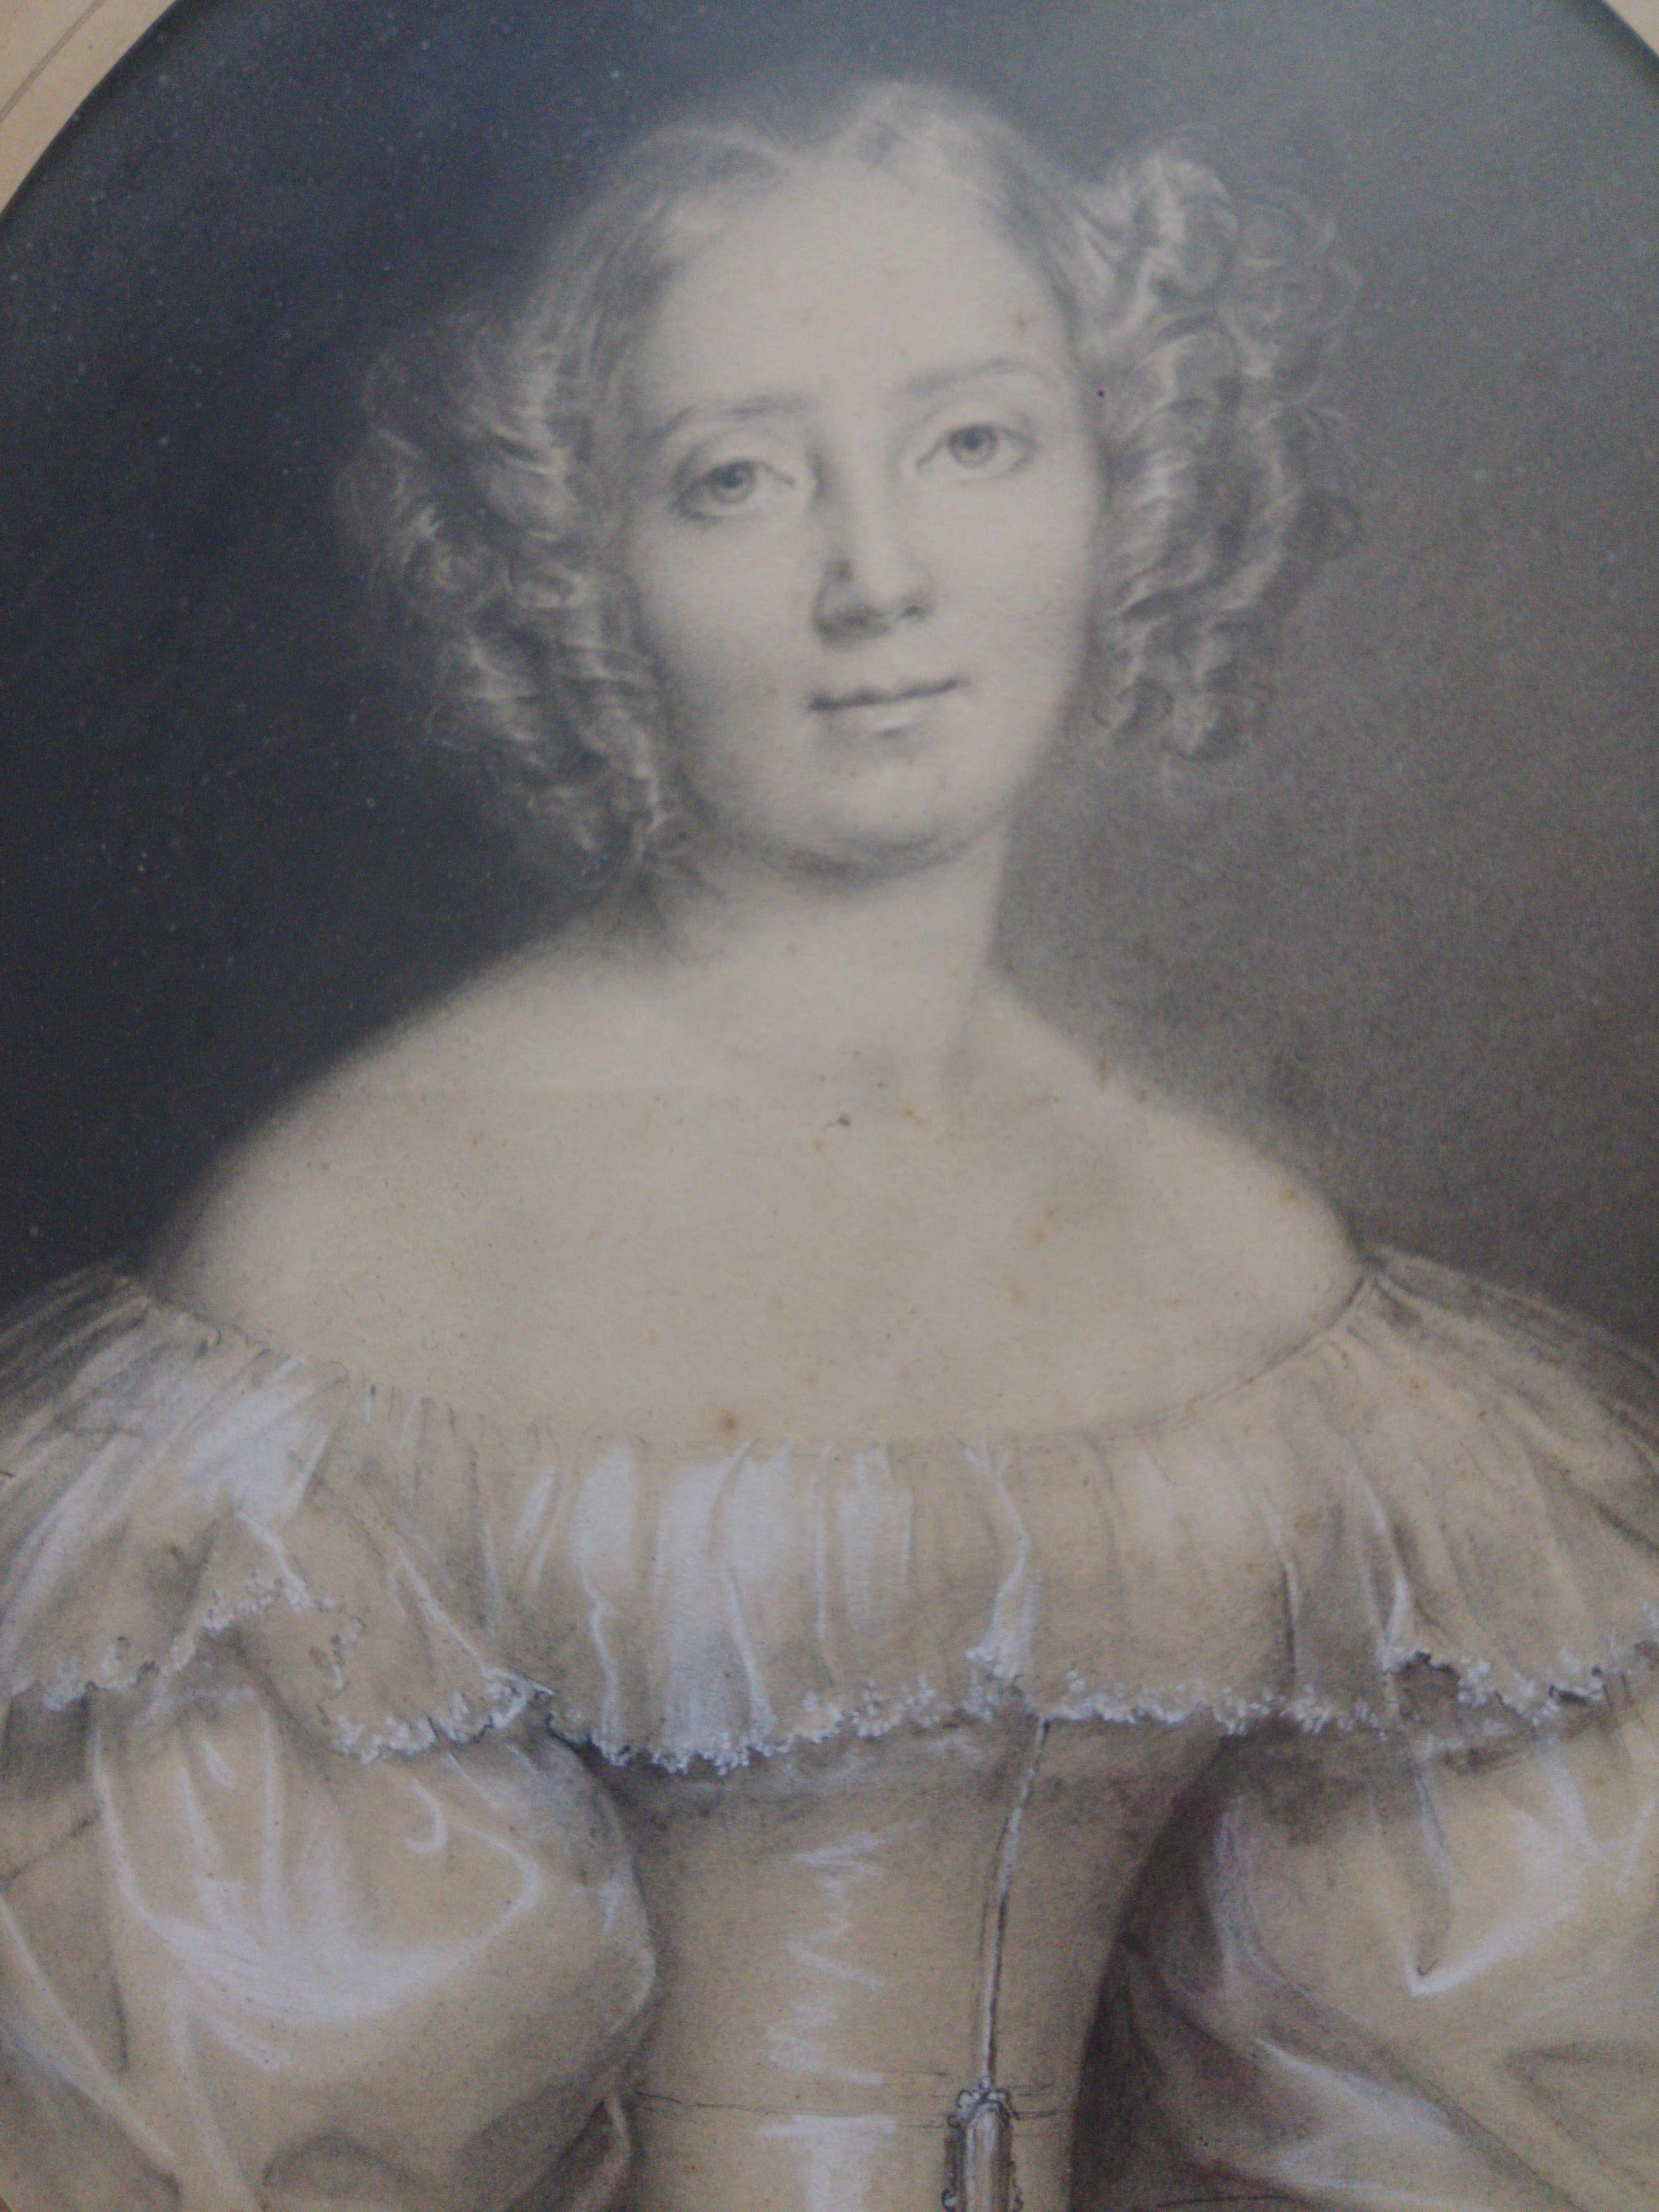 Ein verblüffendes Porträt einer gesellschaftlichen Schönheit von Adele Grasset (aktiv ca. 1830-1850). Mit offenem Gesicht und leicht lächelnden Lippen trägt sie ein typisches Kleid aus der Zeit der Romantik. Die in Graphit gezeichnete und mit Weiß